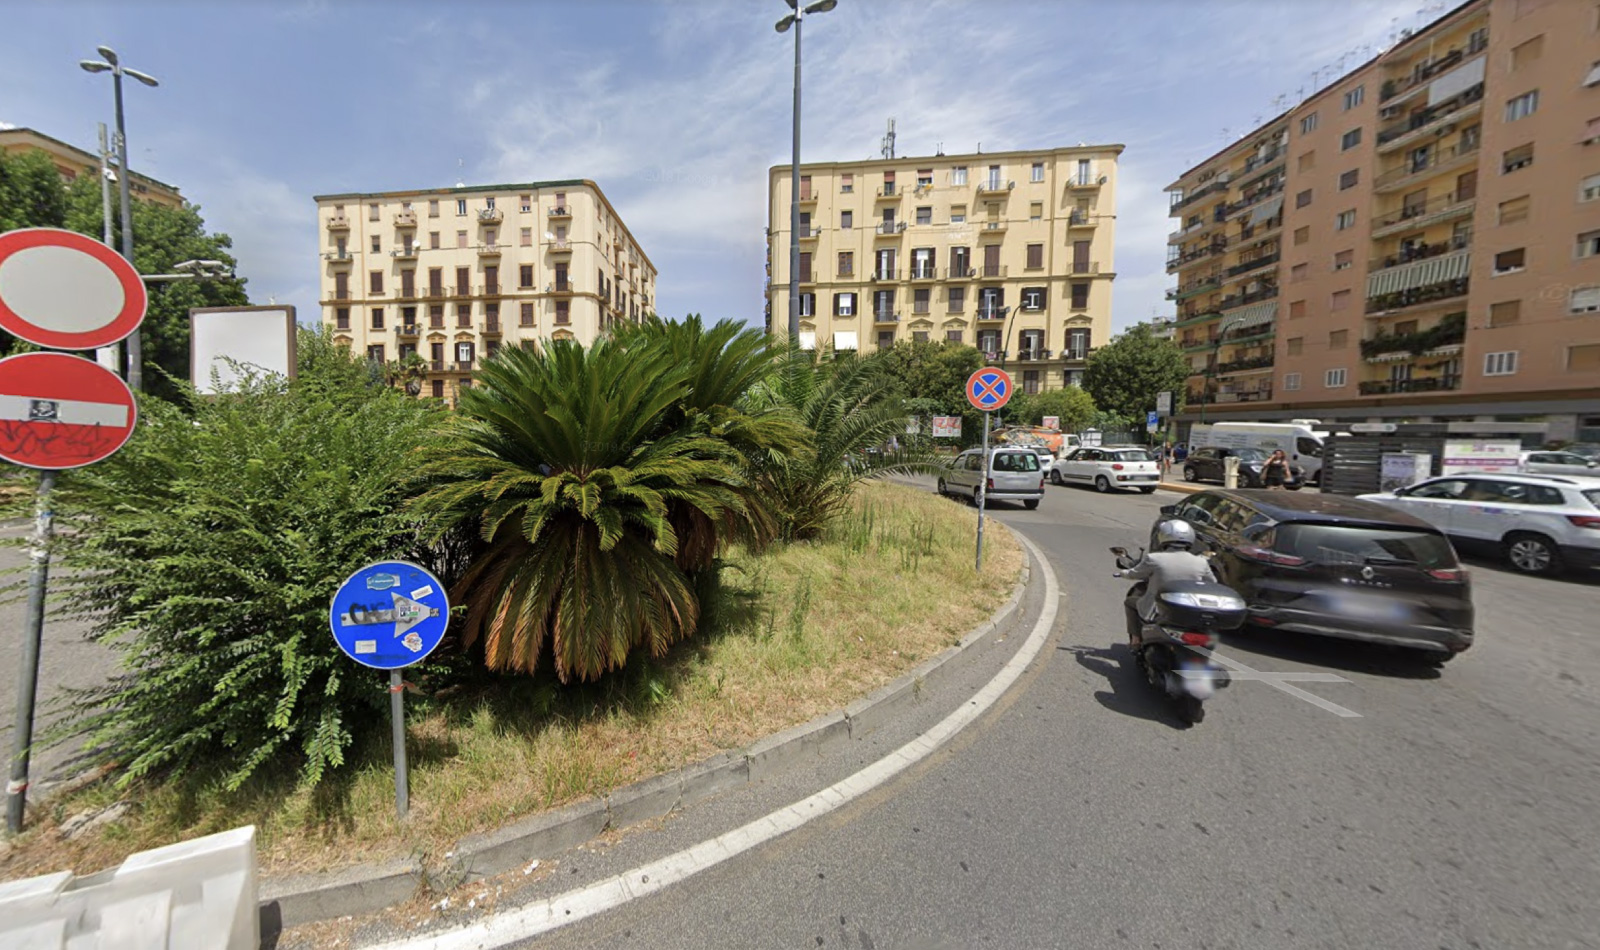 Foto di piazza degli artisti di Napoli presa da google maps